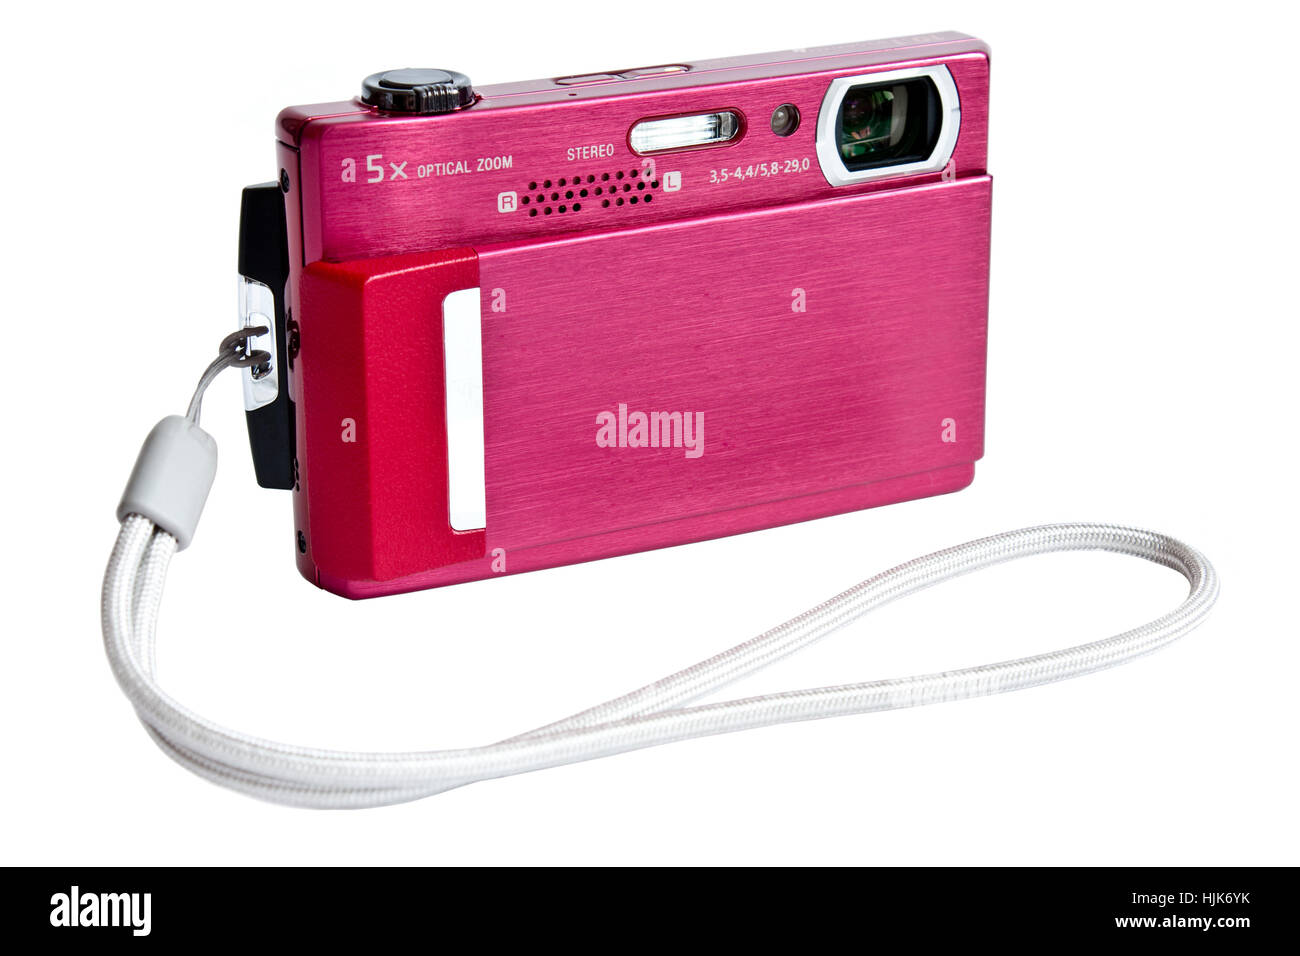 Antigua cámara instantánea Polaroid junto a un moderno ultra-compacta Sony  Cyber-shot Fotografía de stock - Alamy